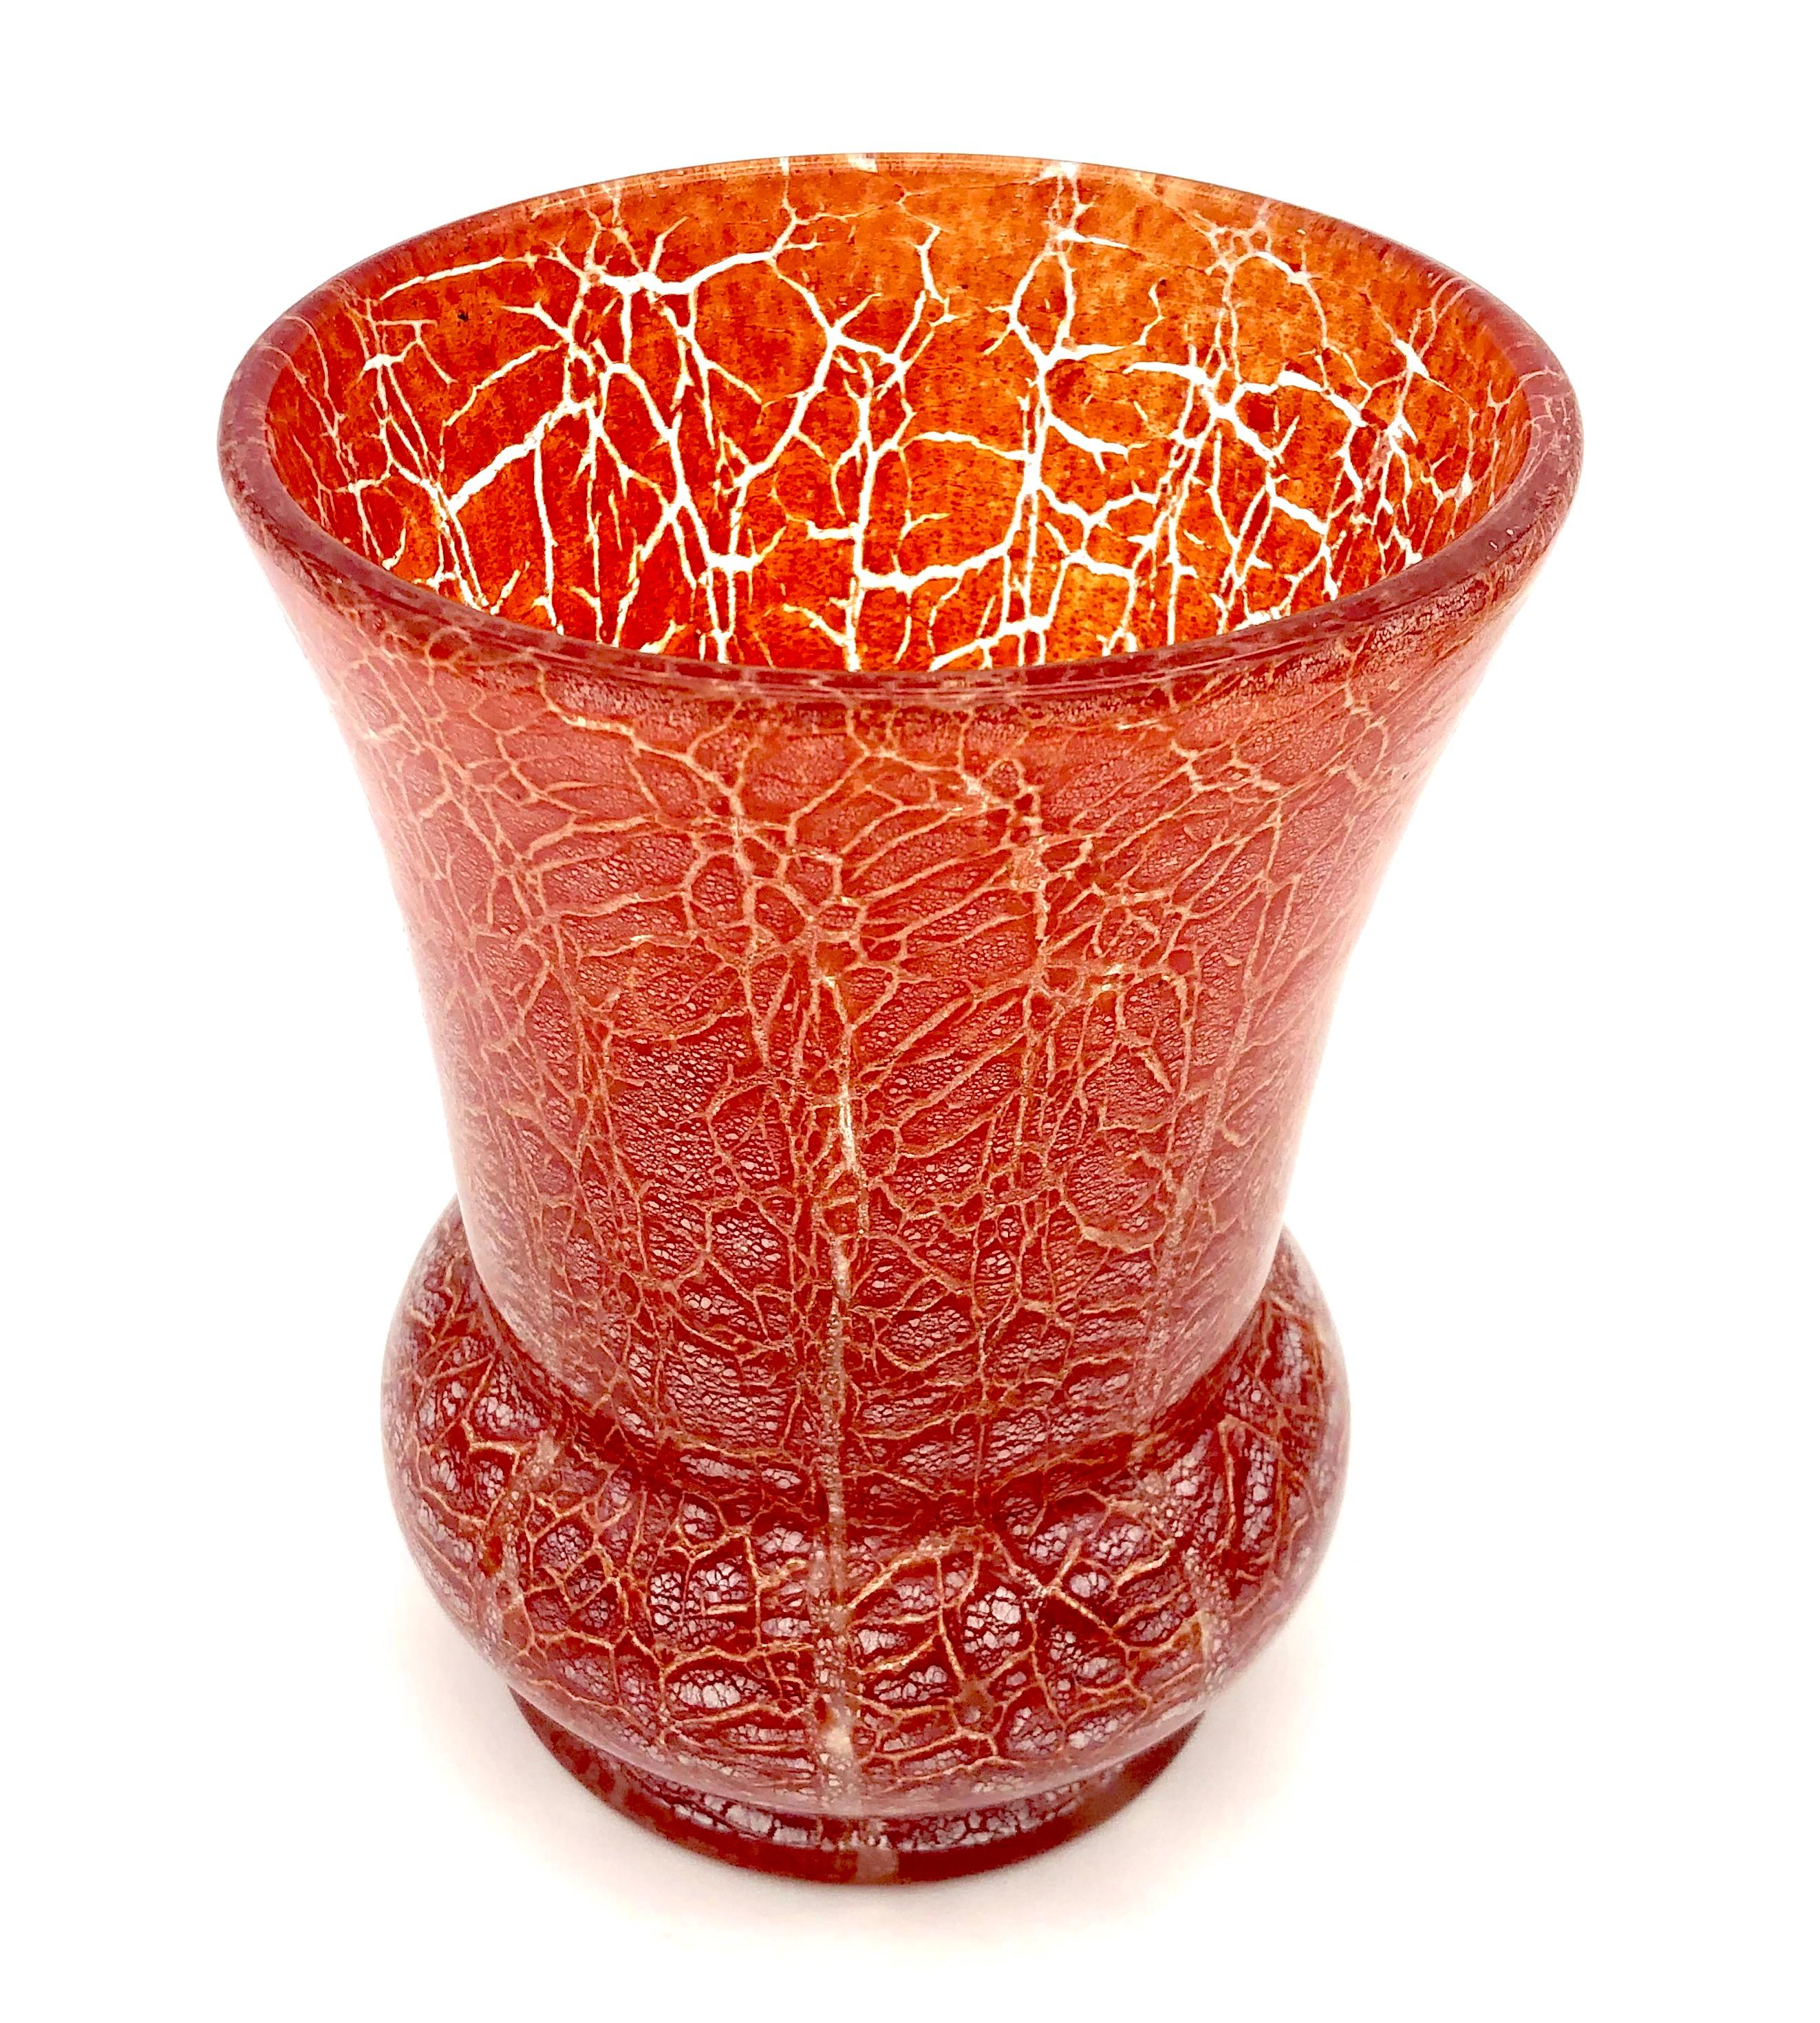 Diese Art-Déco-Vase wurde von Karl Wiedmann (1905-1992) für WMF um 1930 entworfen.  Es handelt sich um eine der Ikora-Kunstgläser. Laut Xenia Riemann in ihrem Artikel über WMF im Katalog 